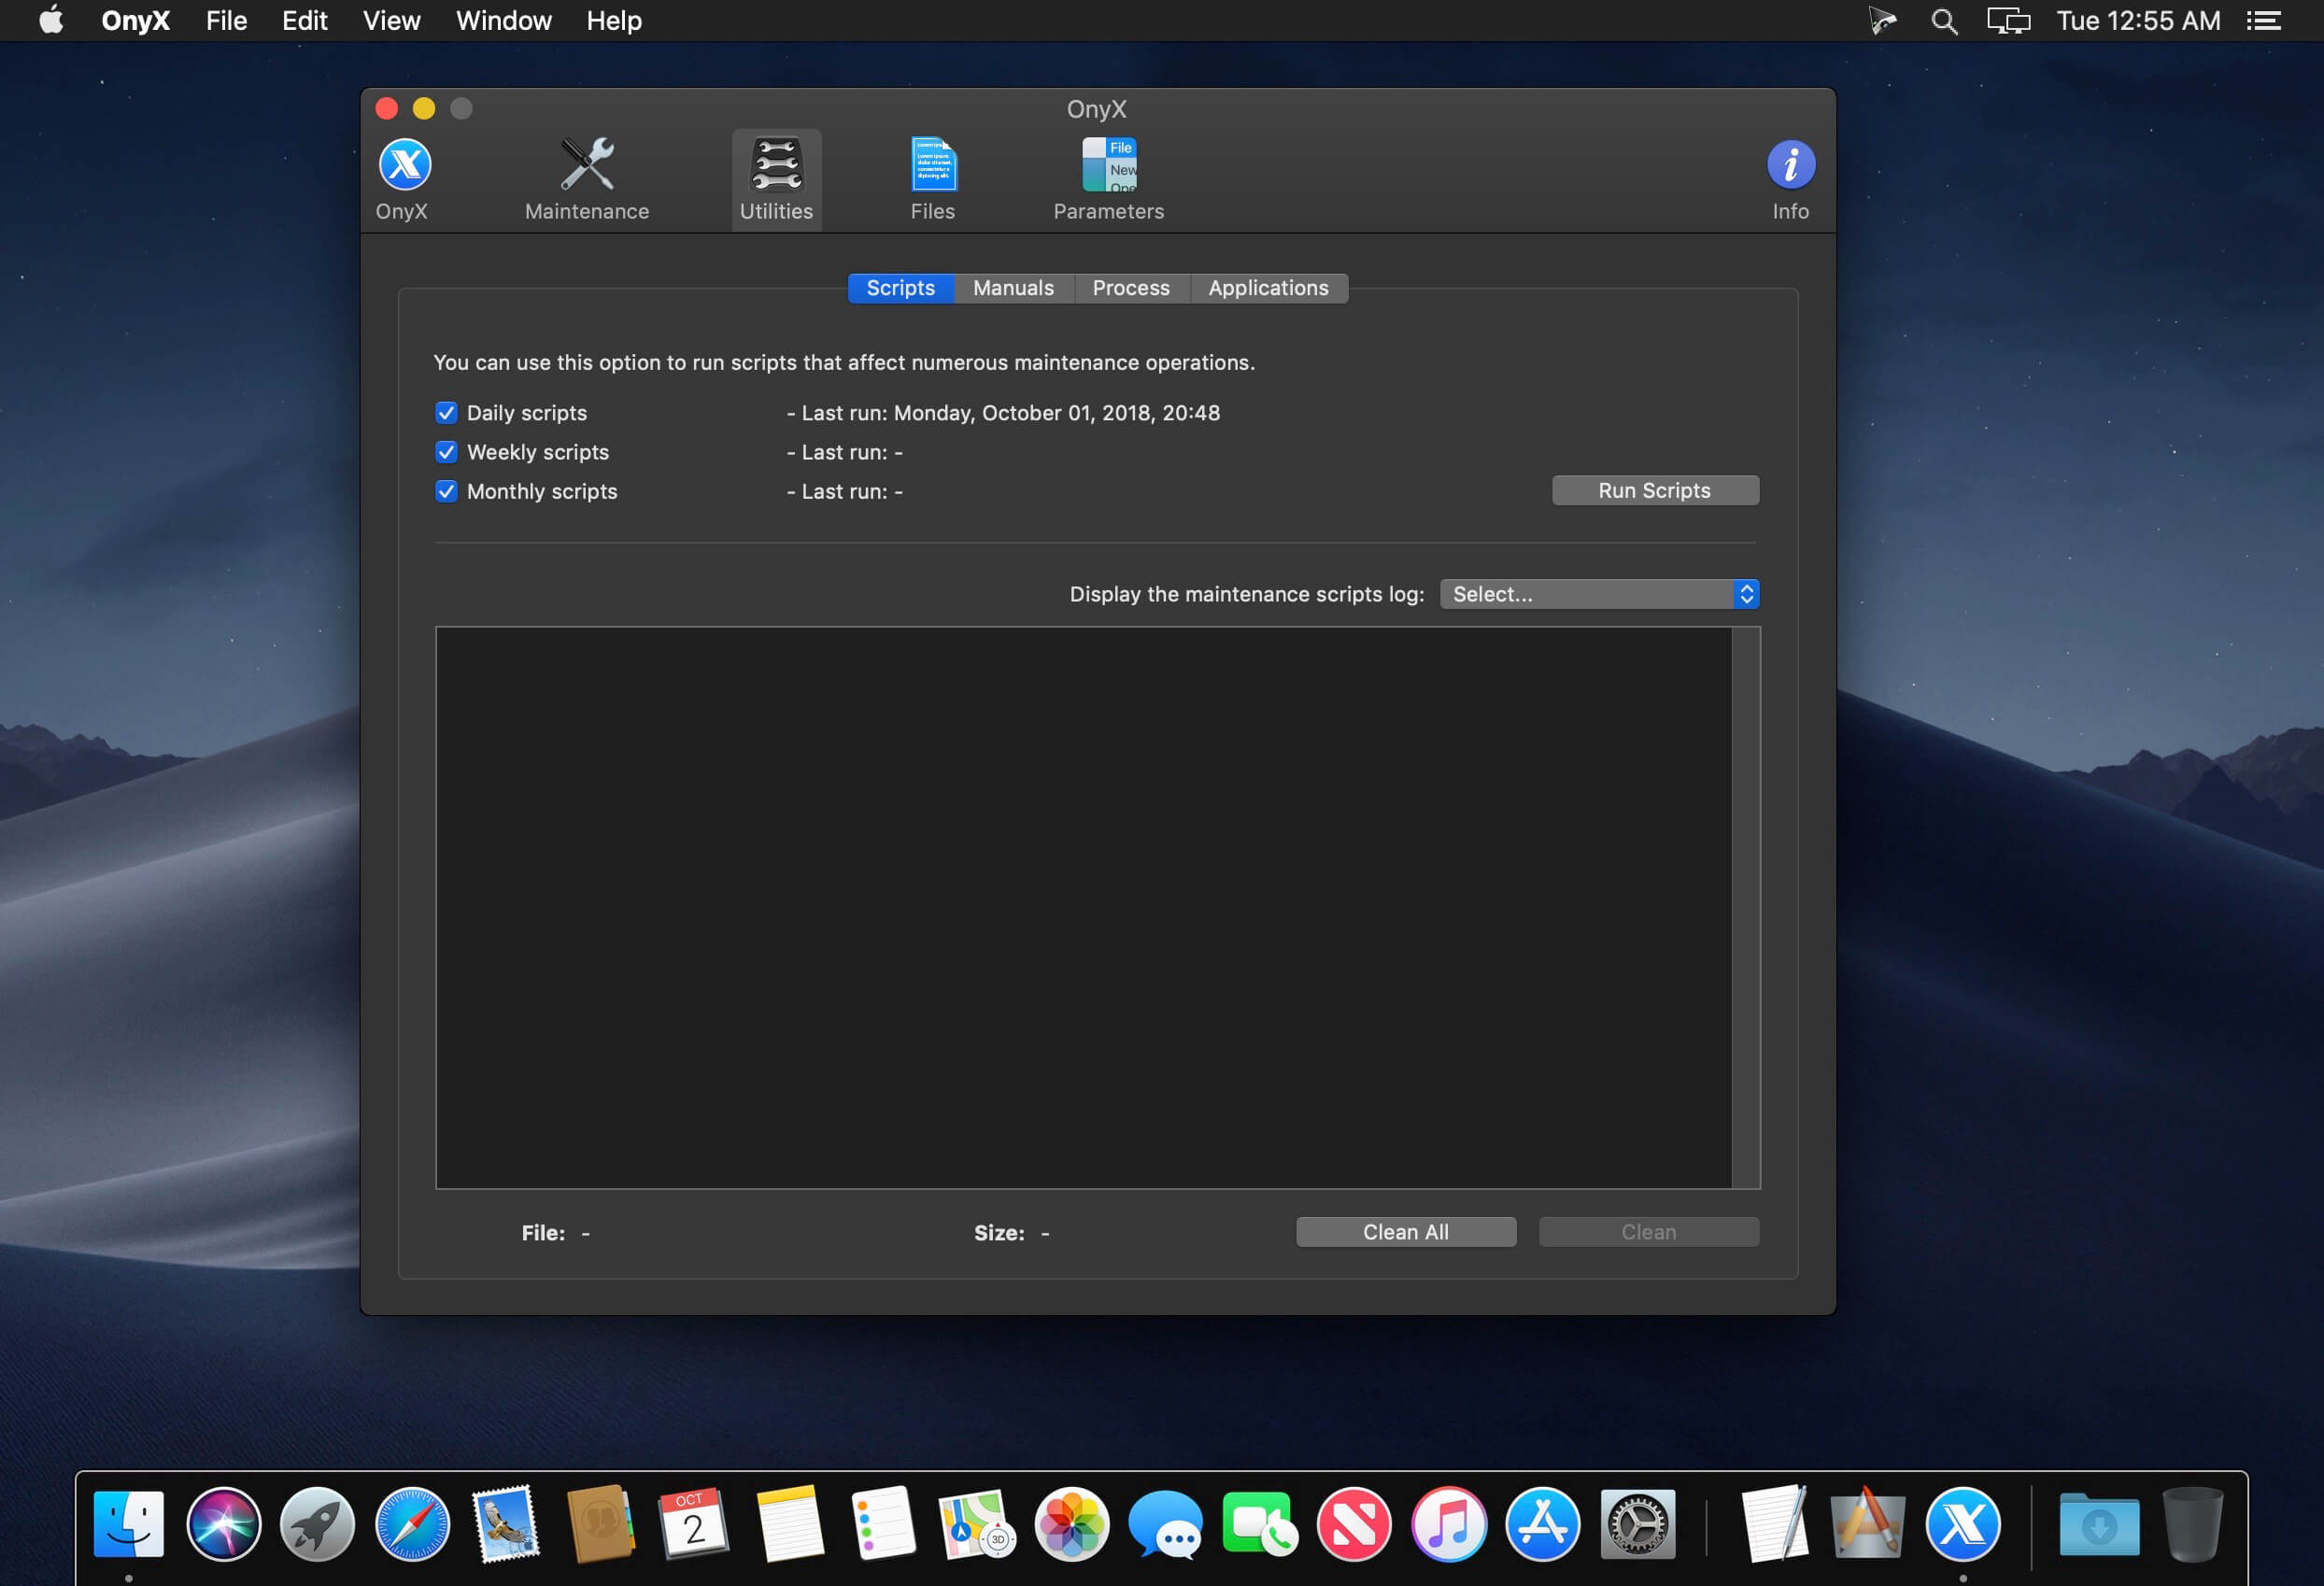 onyx for mac 10.11.6